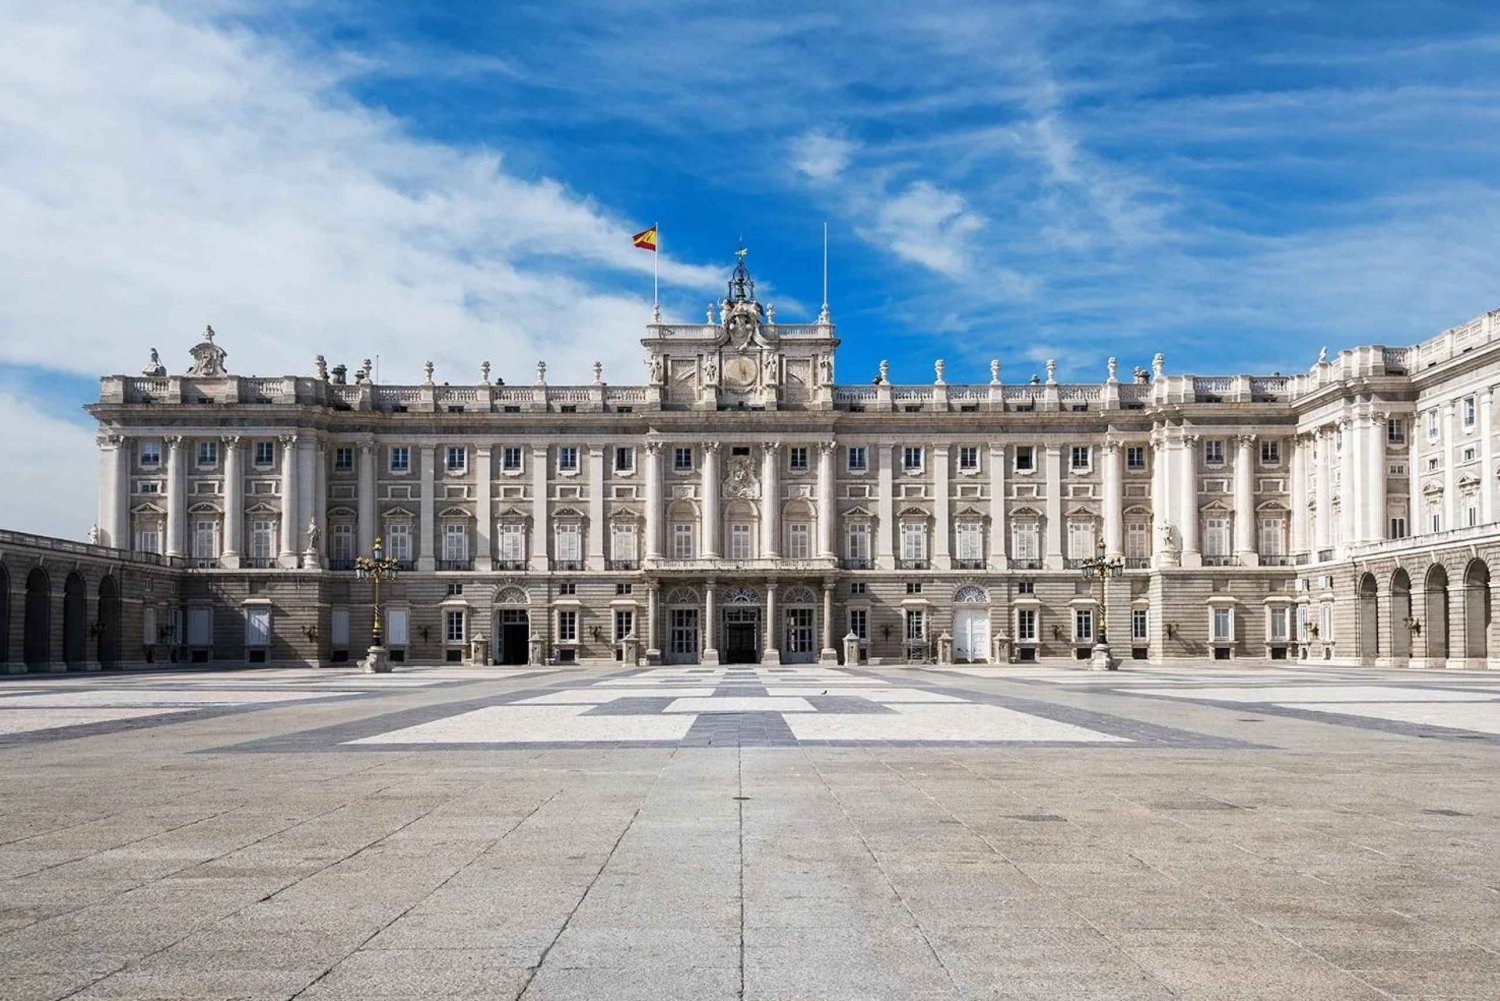 Adéntrate en la realeza: Palacio de Madrid